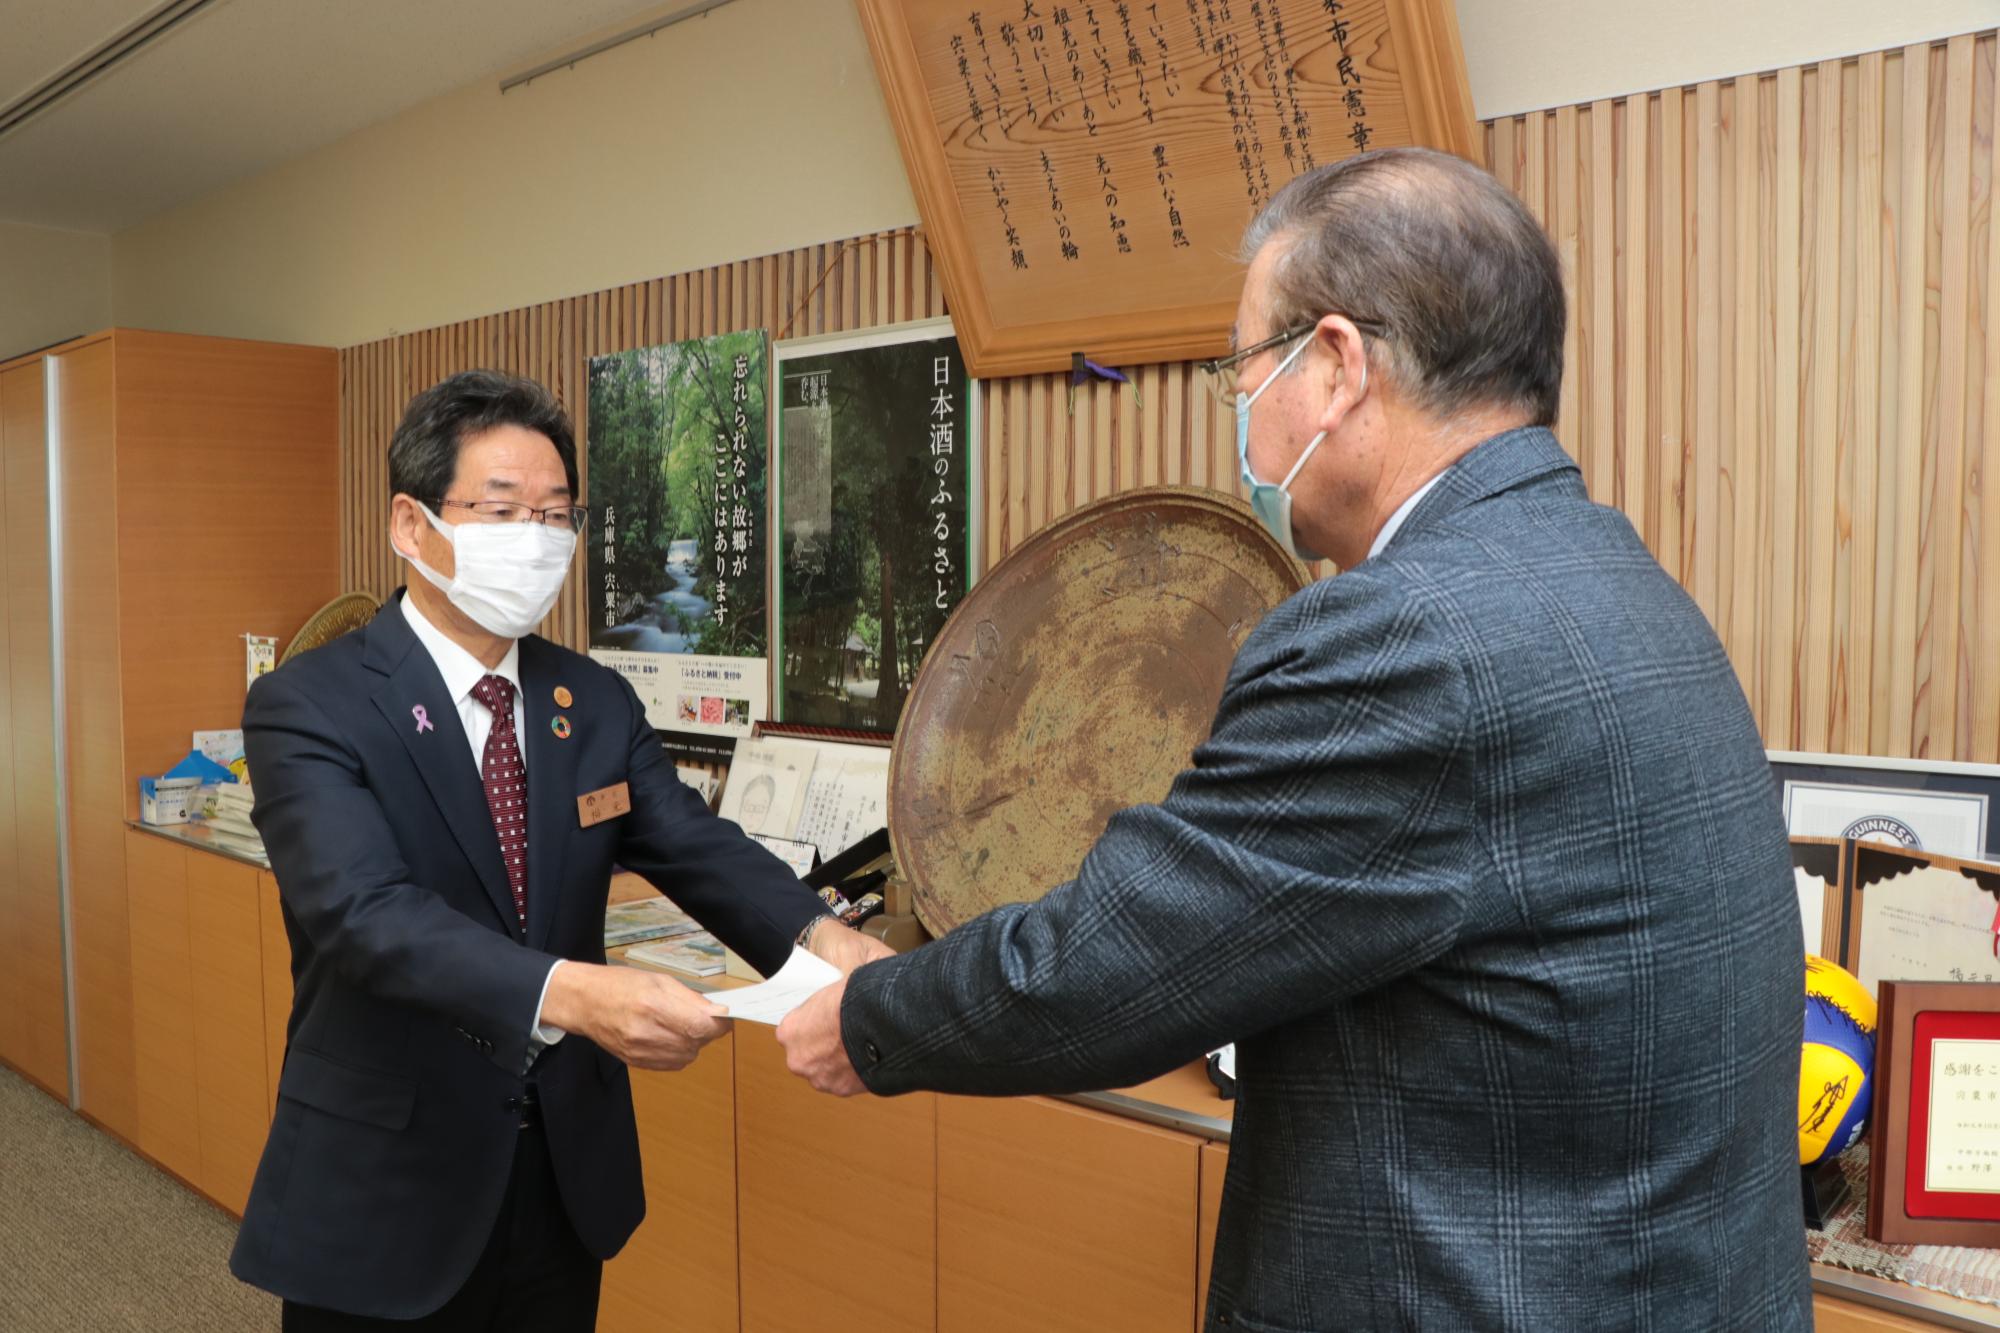 宍粟市公共料金審議会の森脇会長から答申書を受け取る福元市長の写真